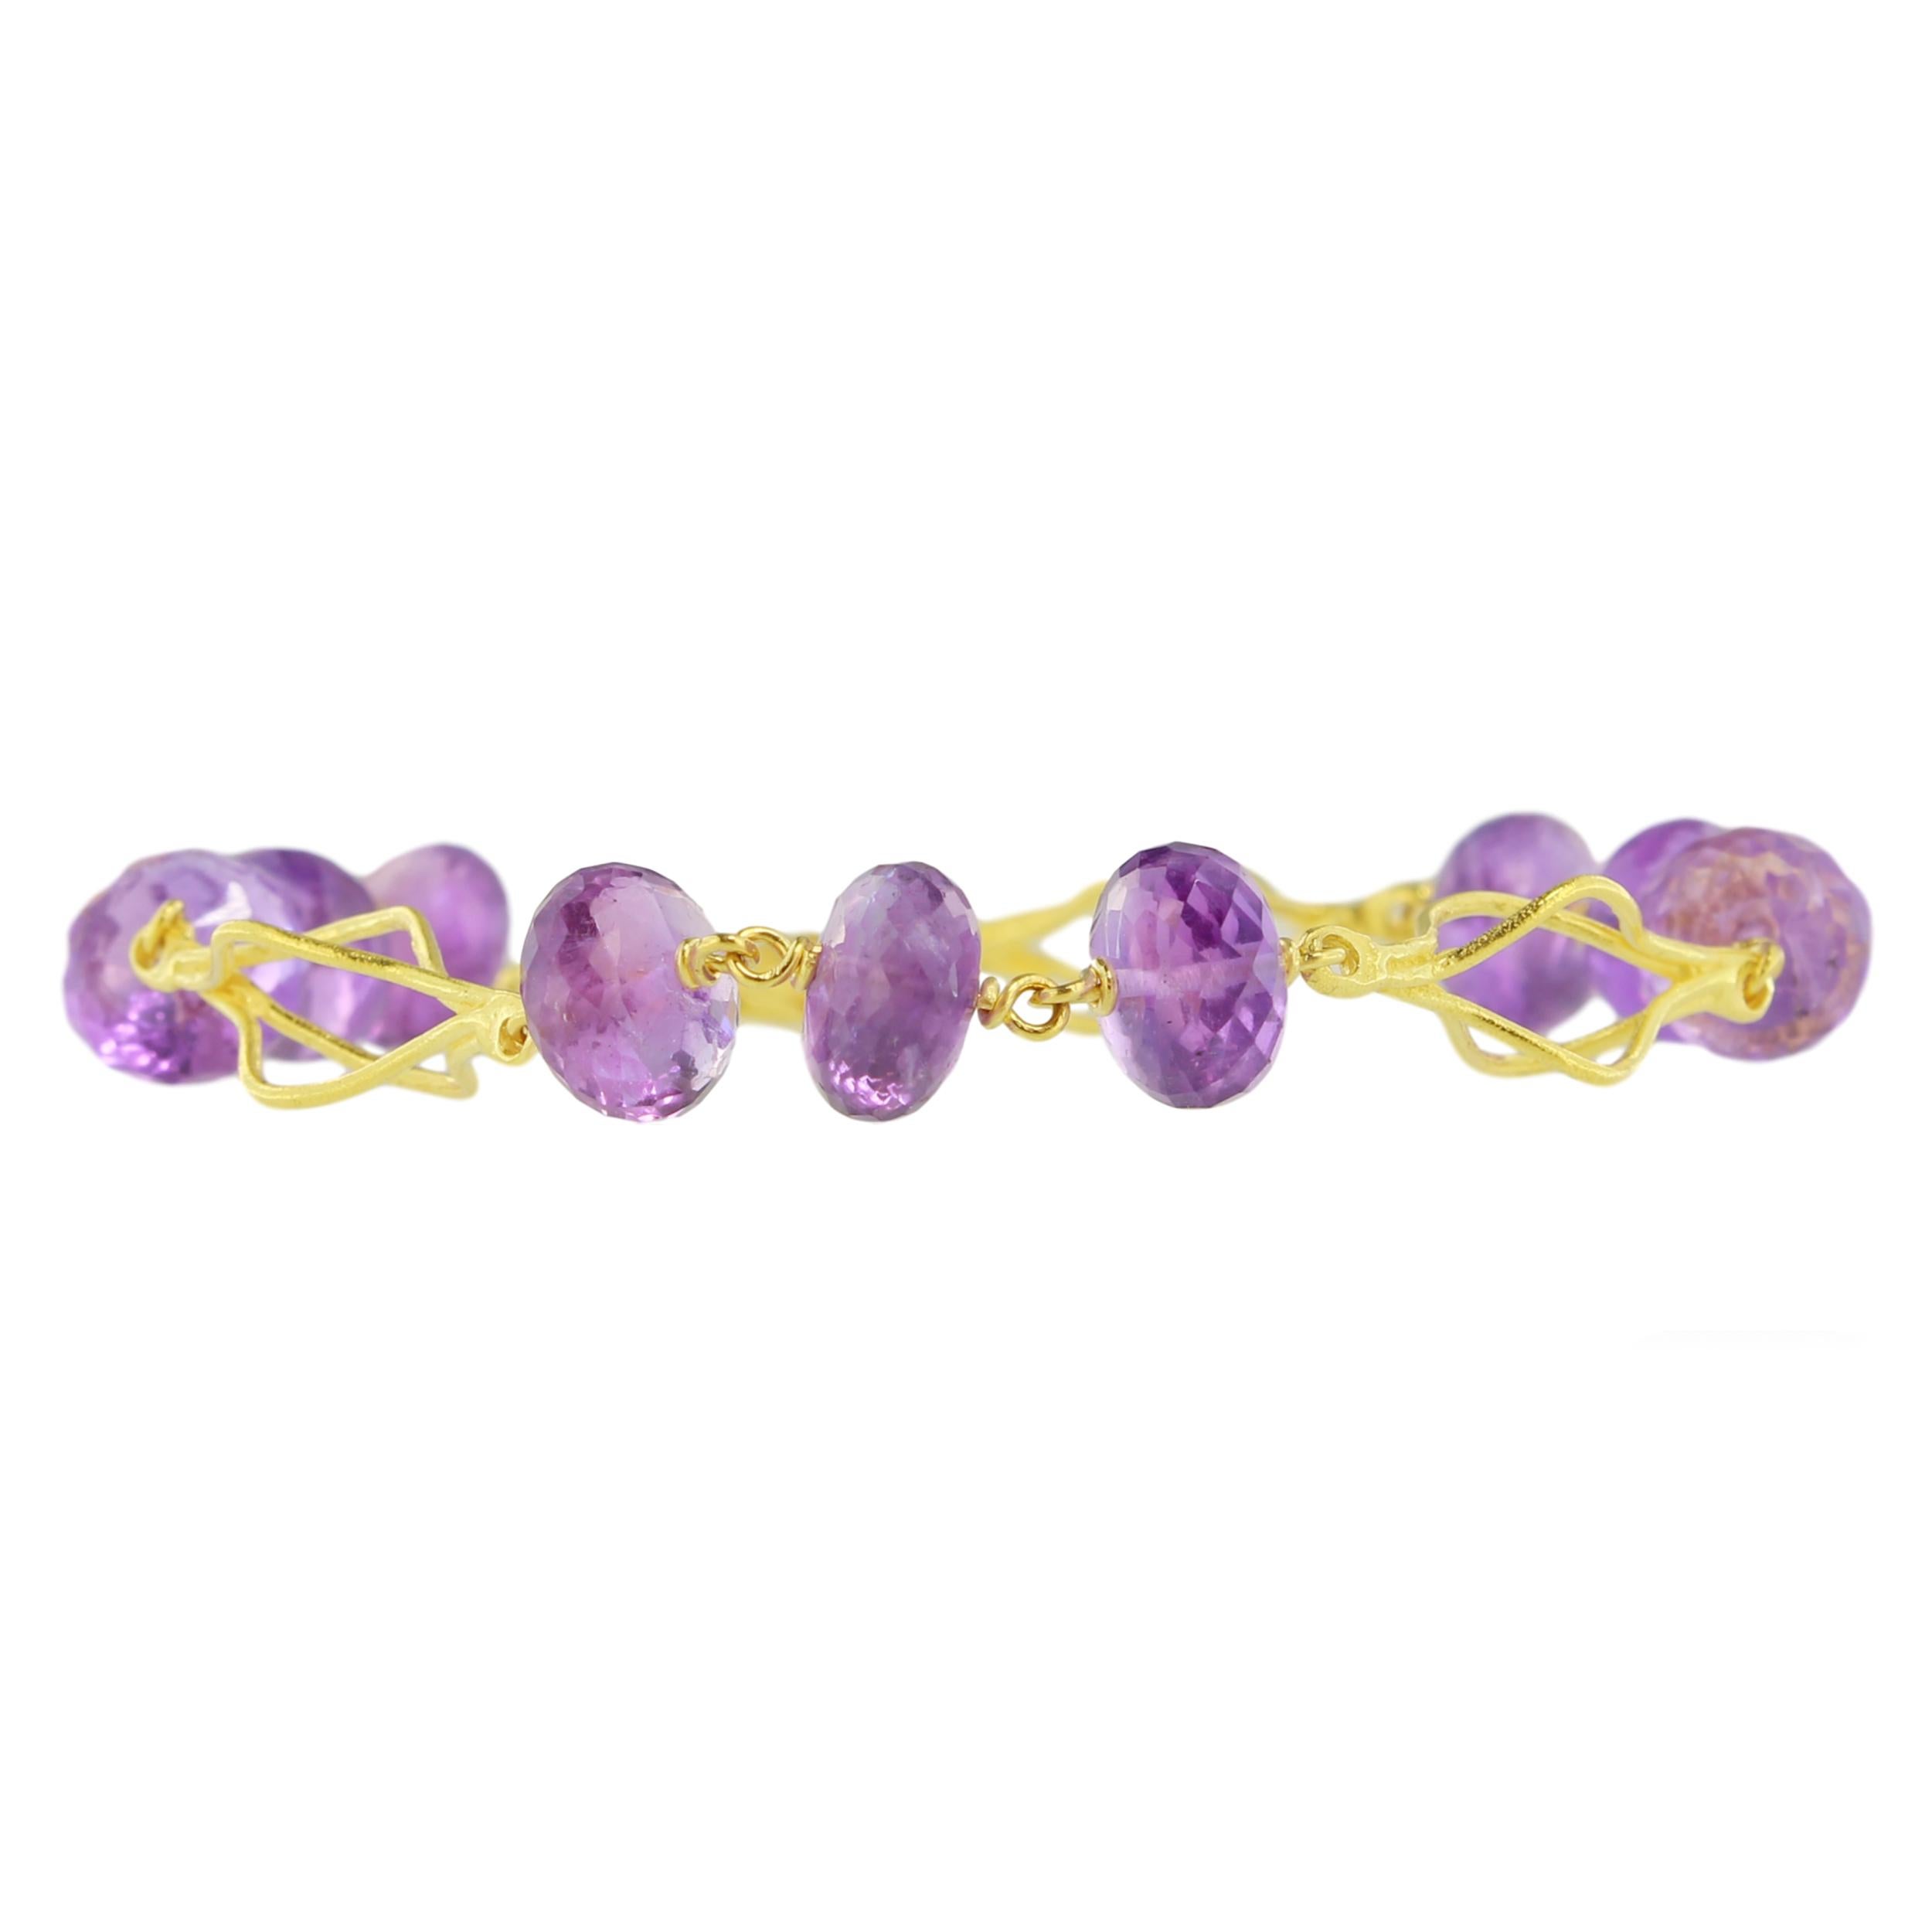 Exquis bracelet mode en or jaune satiné et pierres précieuses d'améthyste violette, de la collection 